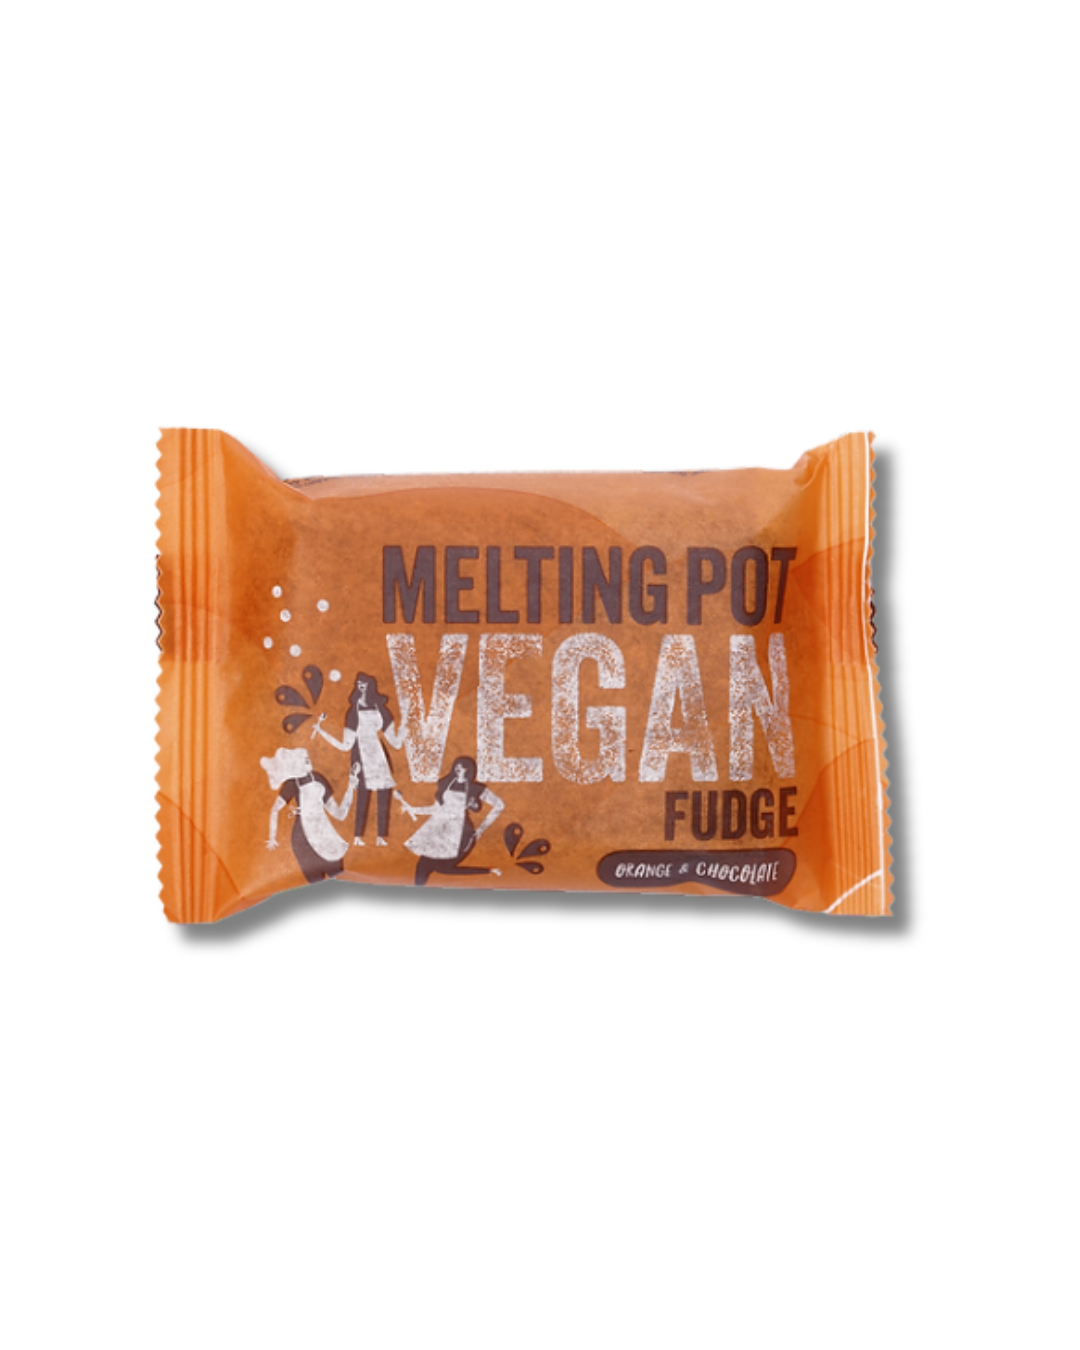 Vegan orange and Chocolate fudge 